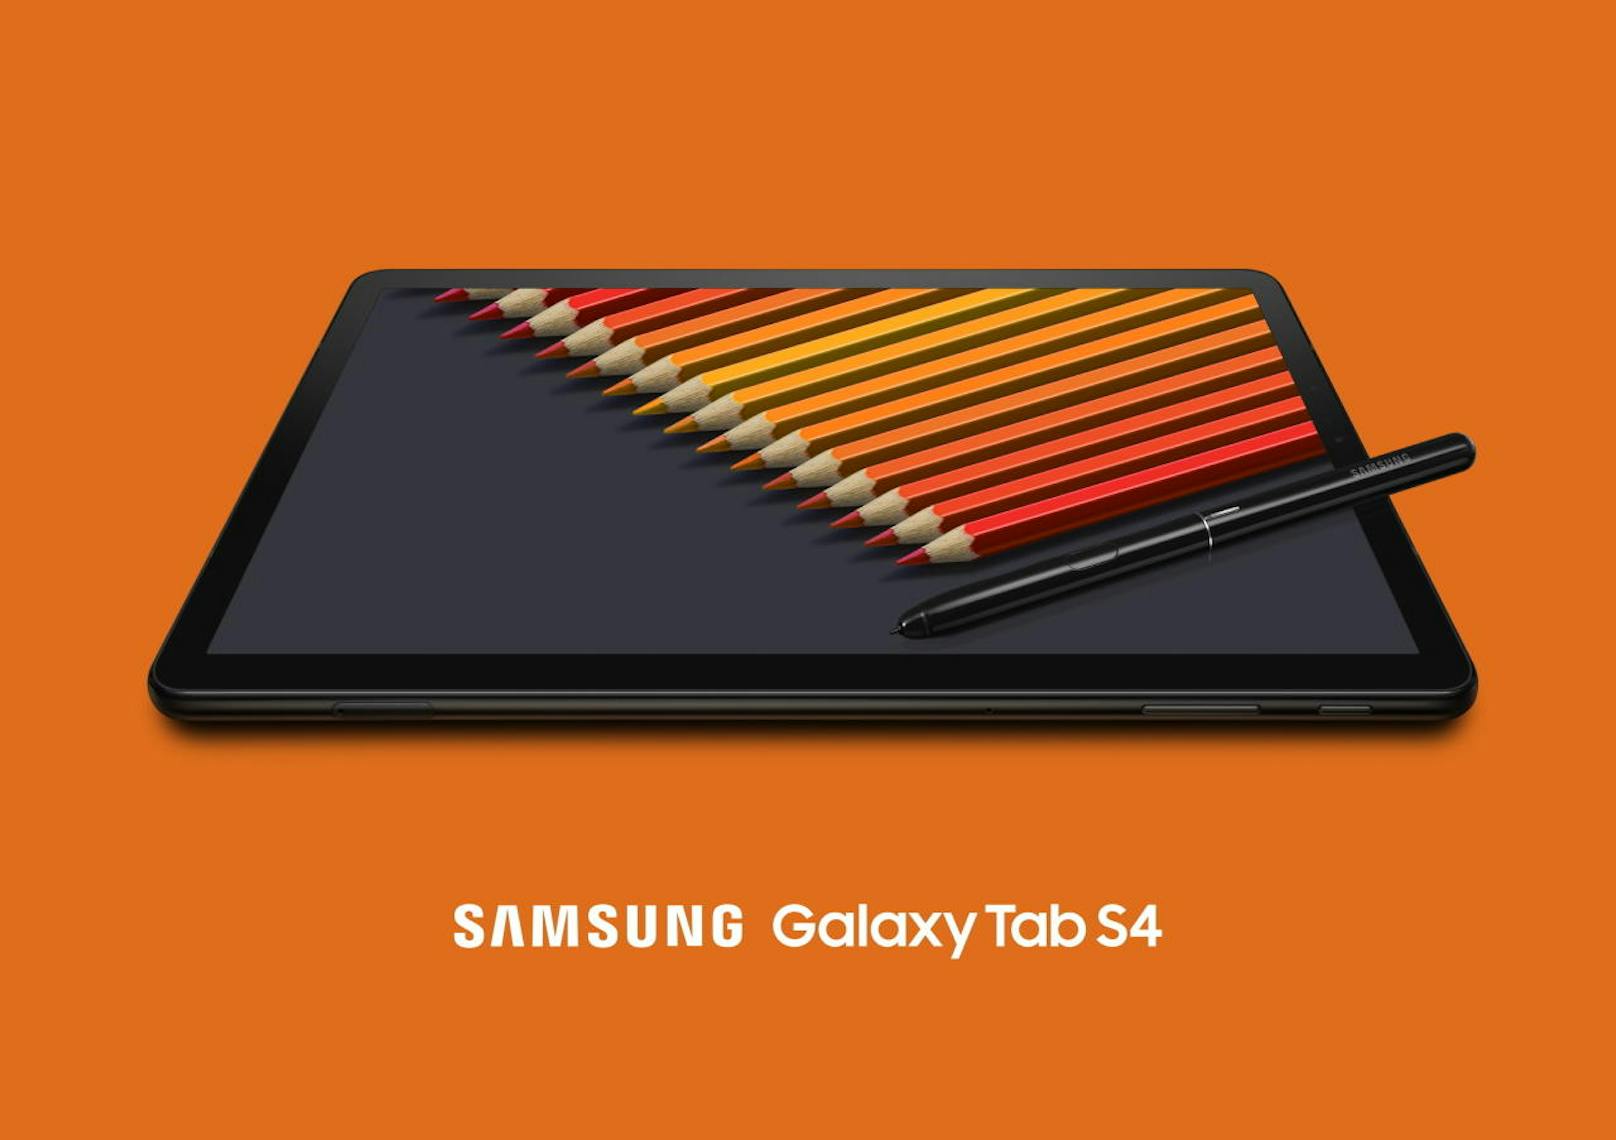 <b>03. August 2018:</b> Am 24. August bringt Samsung mit dem Galaxy Tab S4 ein neues Spitzen-Stift-Tablet auf den Markt. Das Display misst 10,5 Zoll (S3: 9,7 Zoll), die Auflösung wurde auf 2.560 x 1.600 Pixel erhöht. Im Inneren werkt ein Snapdragon 835 mit acht Kernen. Grundausstattung sind ein 4-GB-Arbeits- und 64- GB-Festspeicher. Die vier Lautsprecher "tuned by AKG" wurden ebenso wie der Akku leistungstechnisch aufgepeppt. Das S4 kostet in der Wifi-Version 699 Euro, für LTE zahlt man 759 Euro.